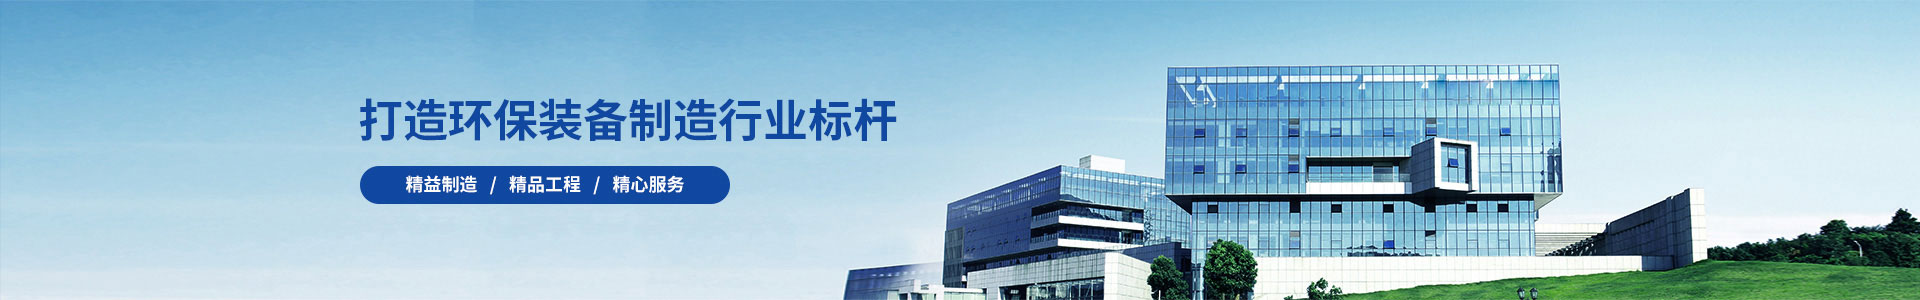 广东中金岭南工程技术有限公司合同签订-新闻动态-江苏长源环保设备有限公司